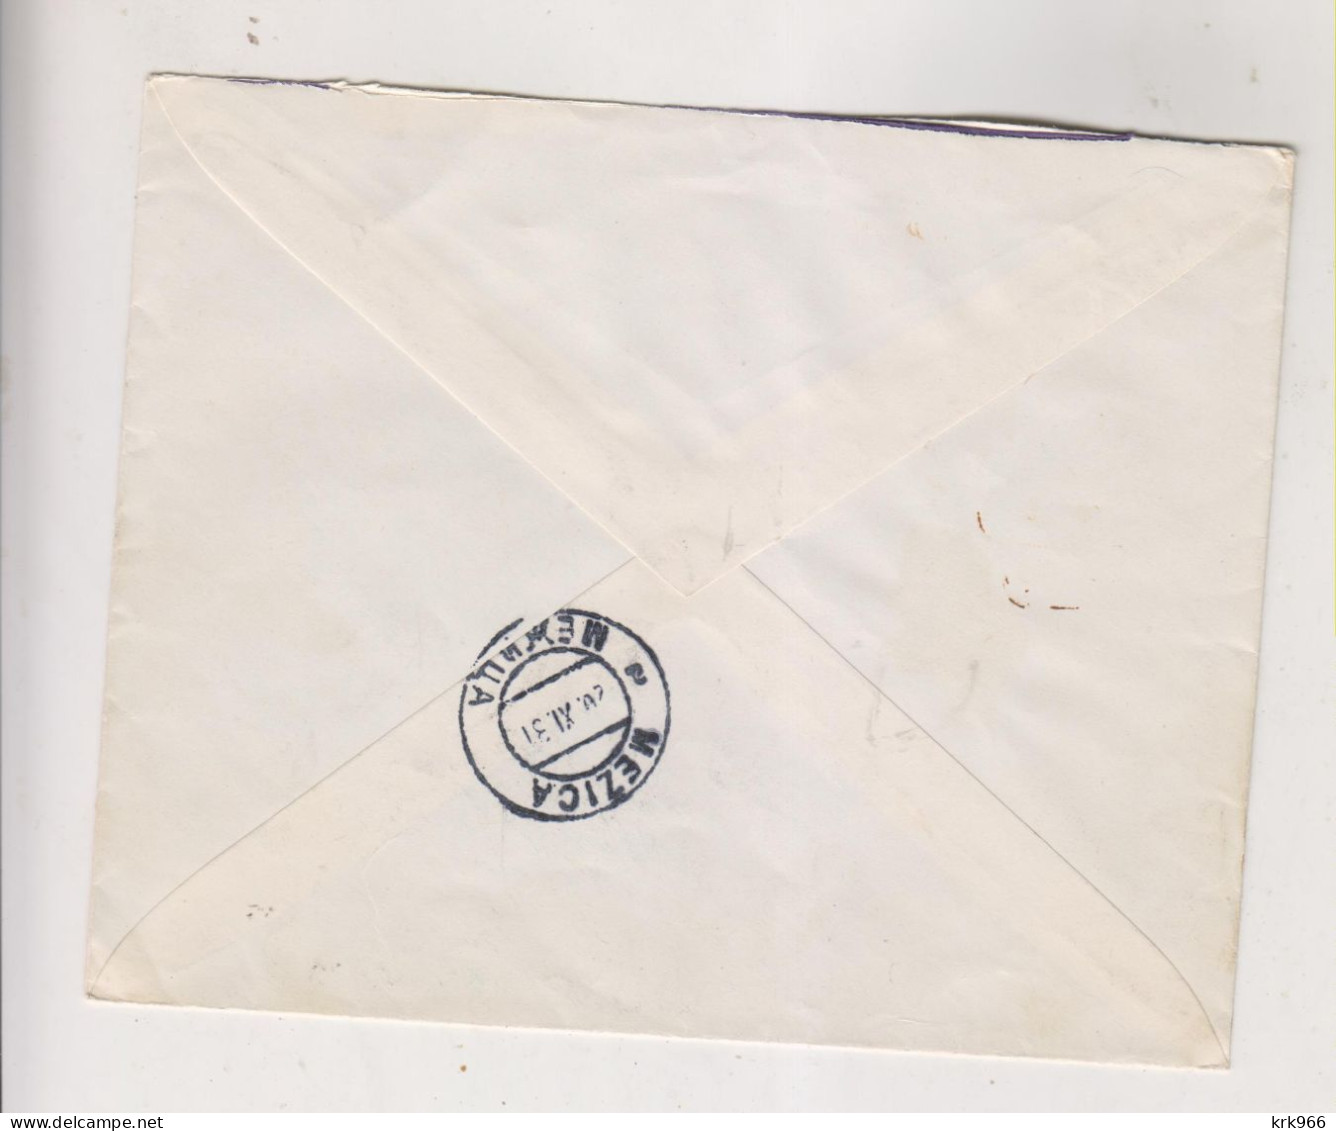 YUGOSLAVIA 1931 PREVALJE Registered   Cover To MEZICA - Briefe U. Dokumente